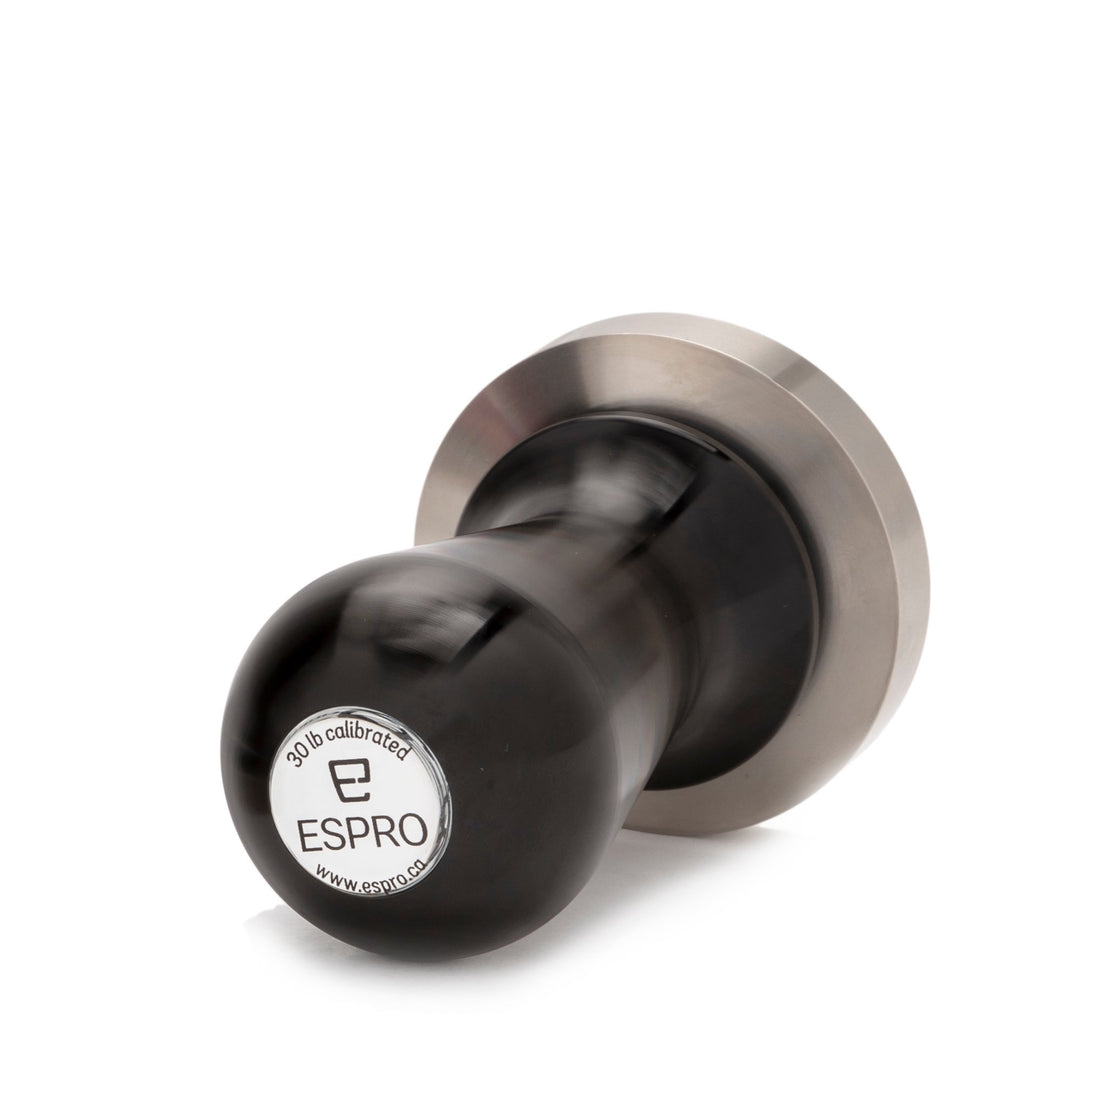 Espro 53mm Calibrated Convex Tamper